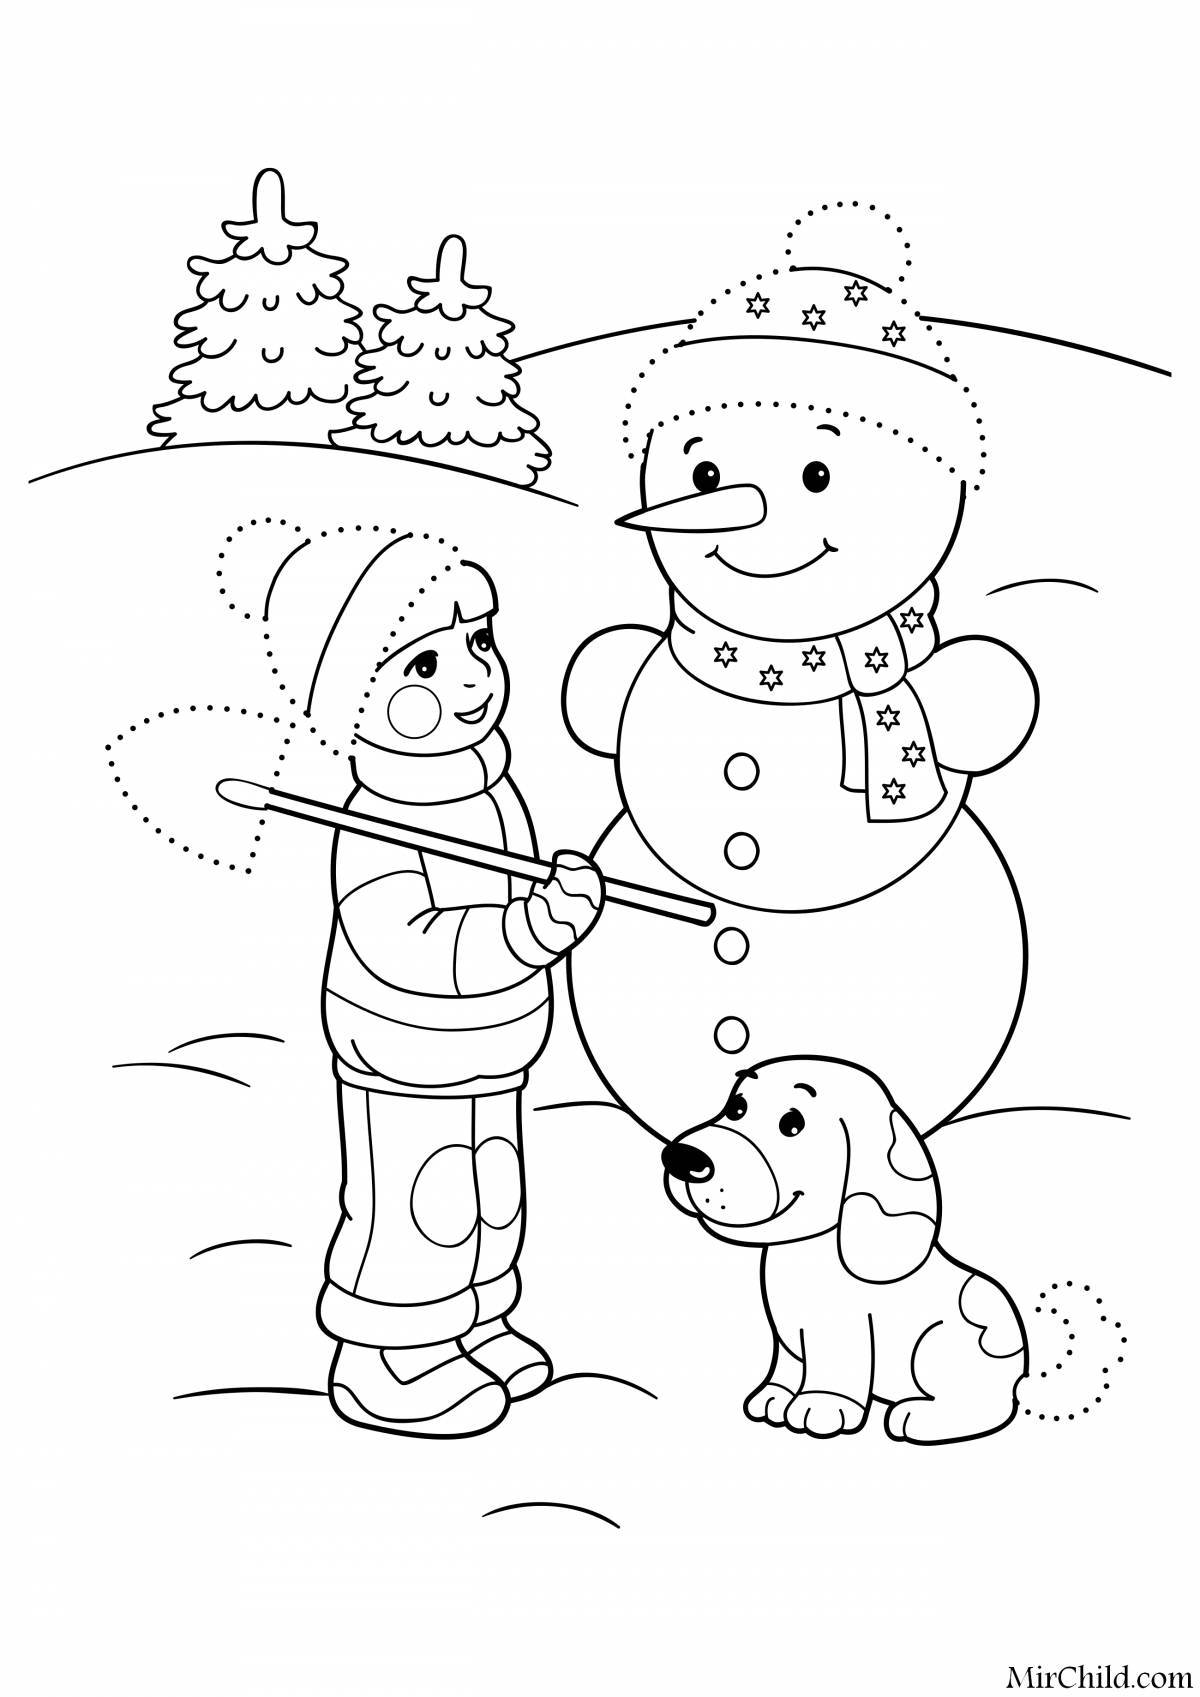 Радостная раскраска для детей зимние забавы 5-6 лет